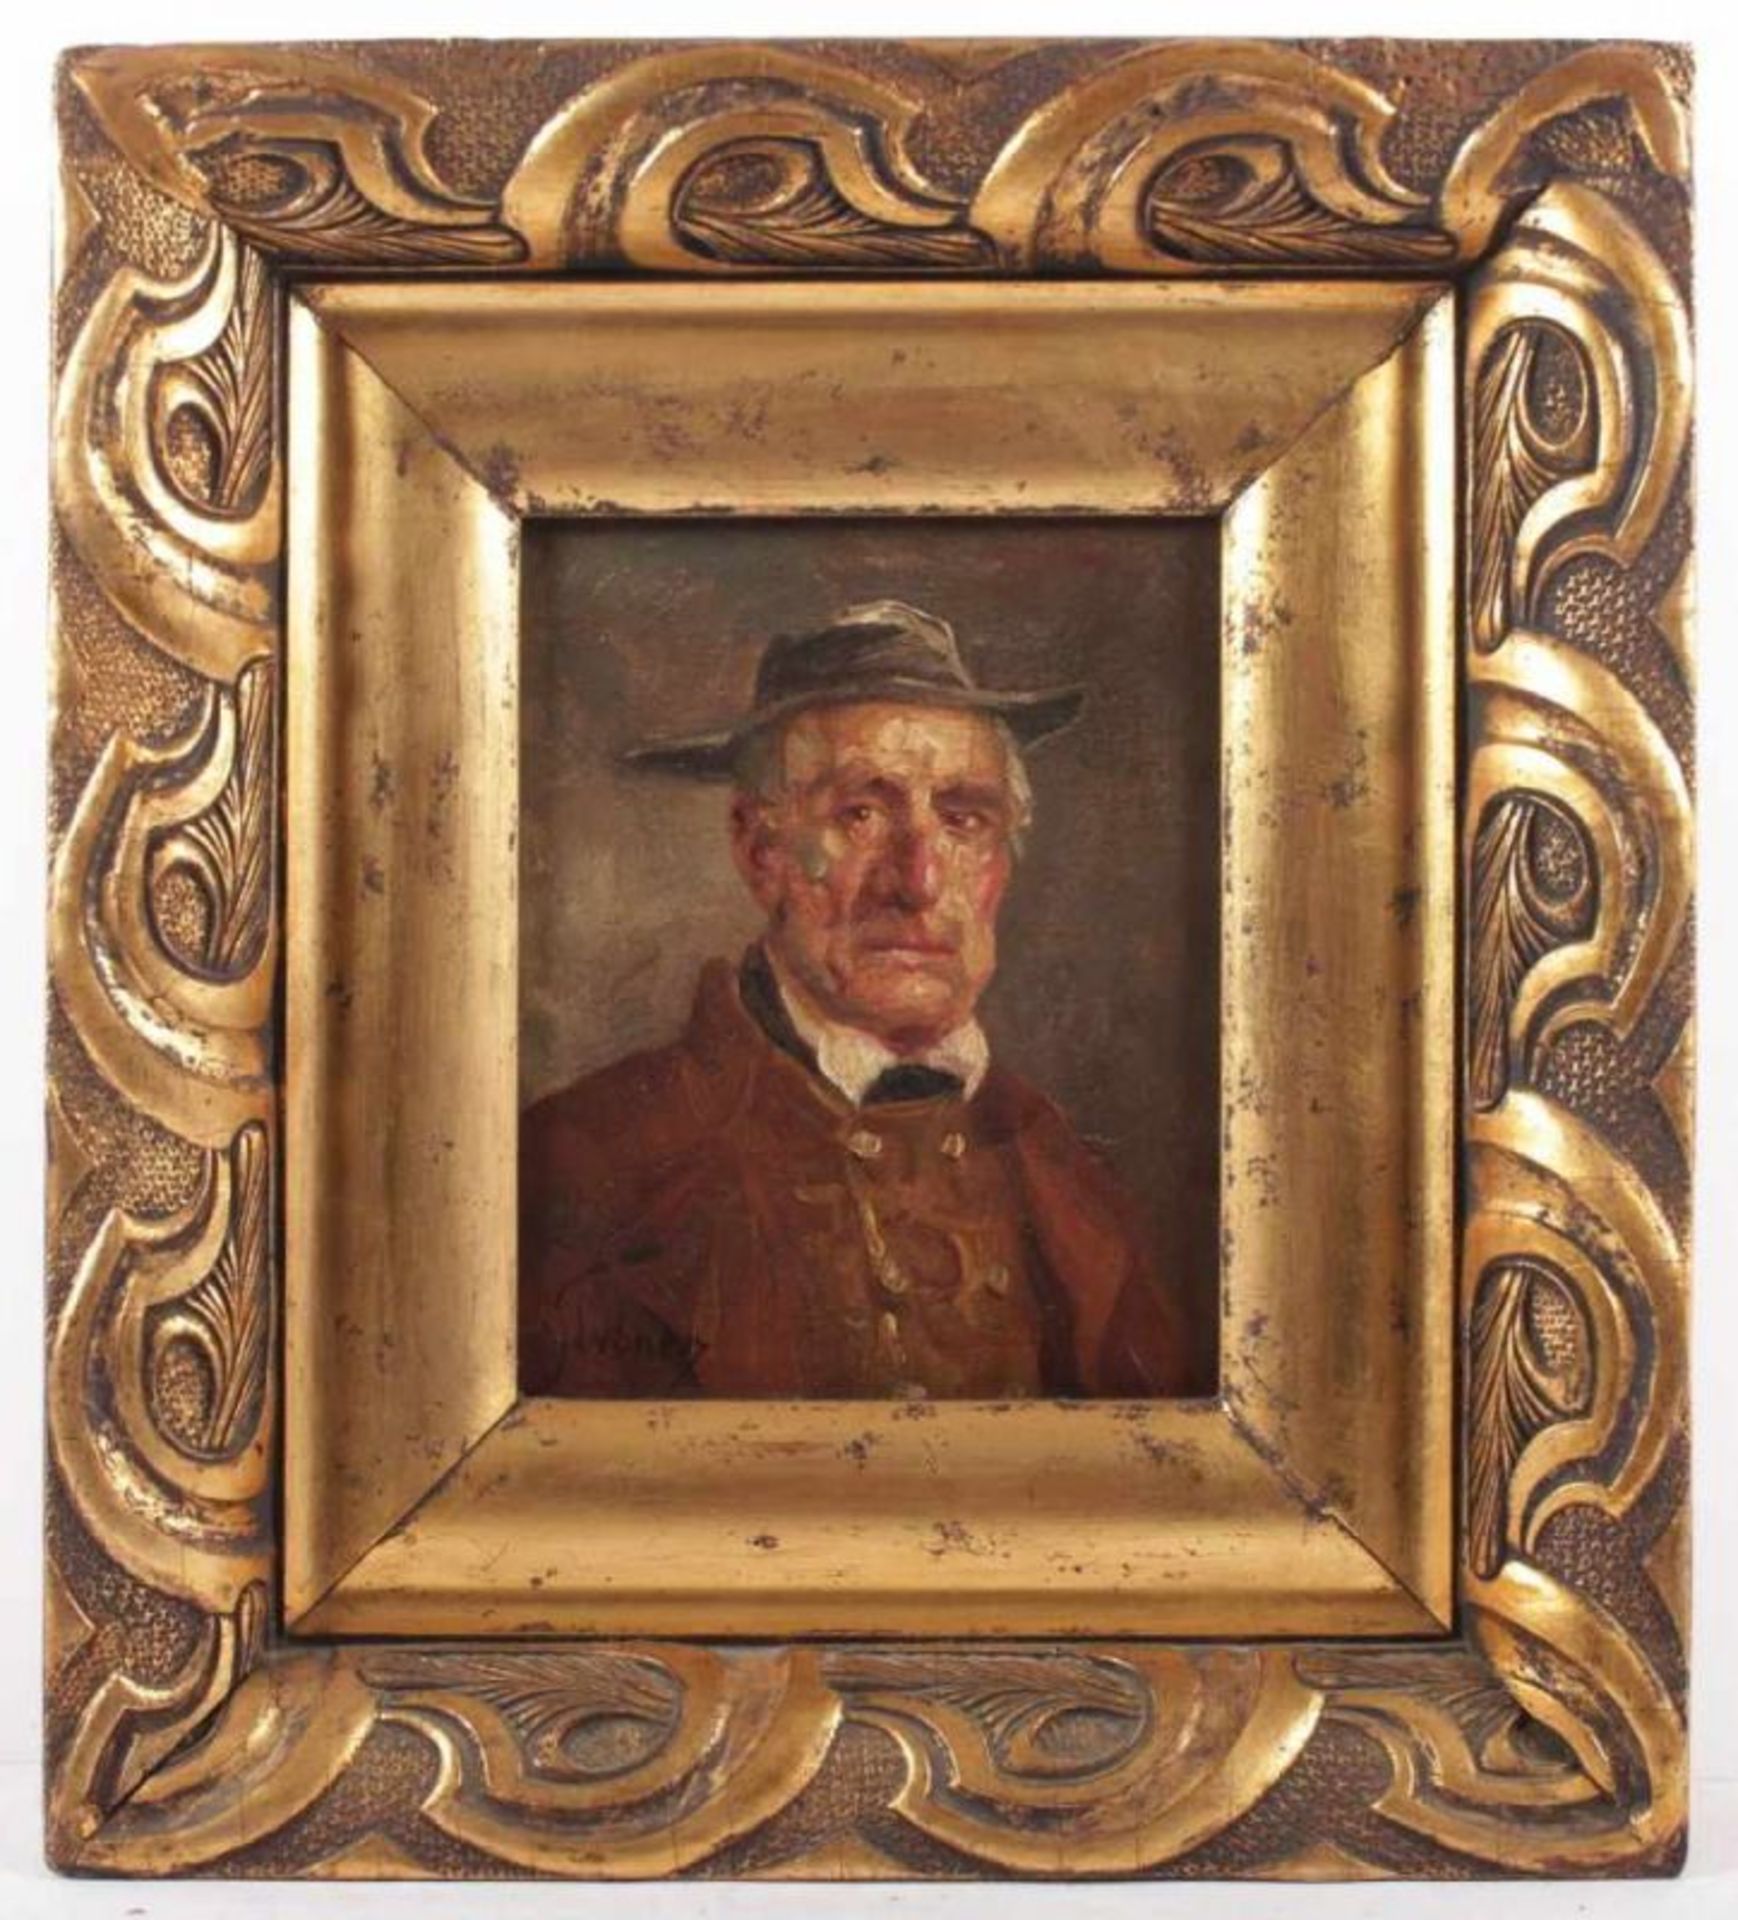 STÜBNER, Hans (1900-1973), "Portrait eines Bauern", Öl/Lwd., 23 x 20, doubliert, unten links